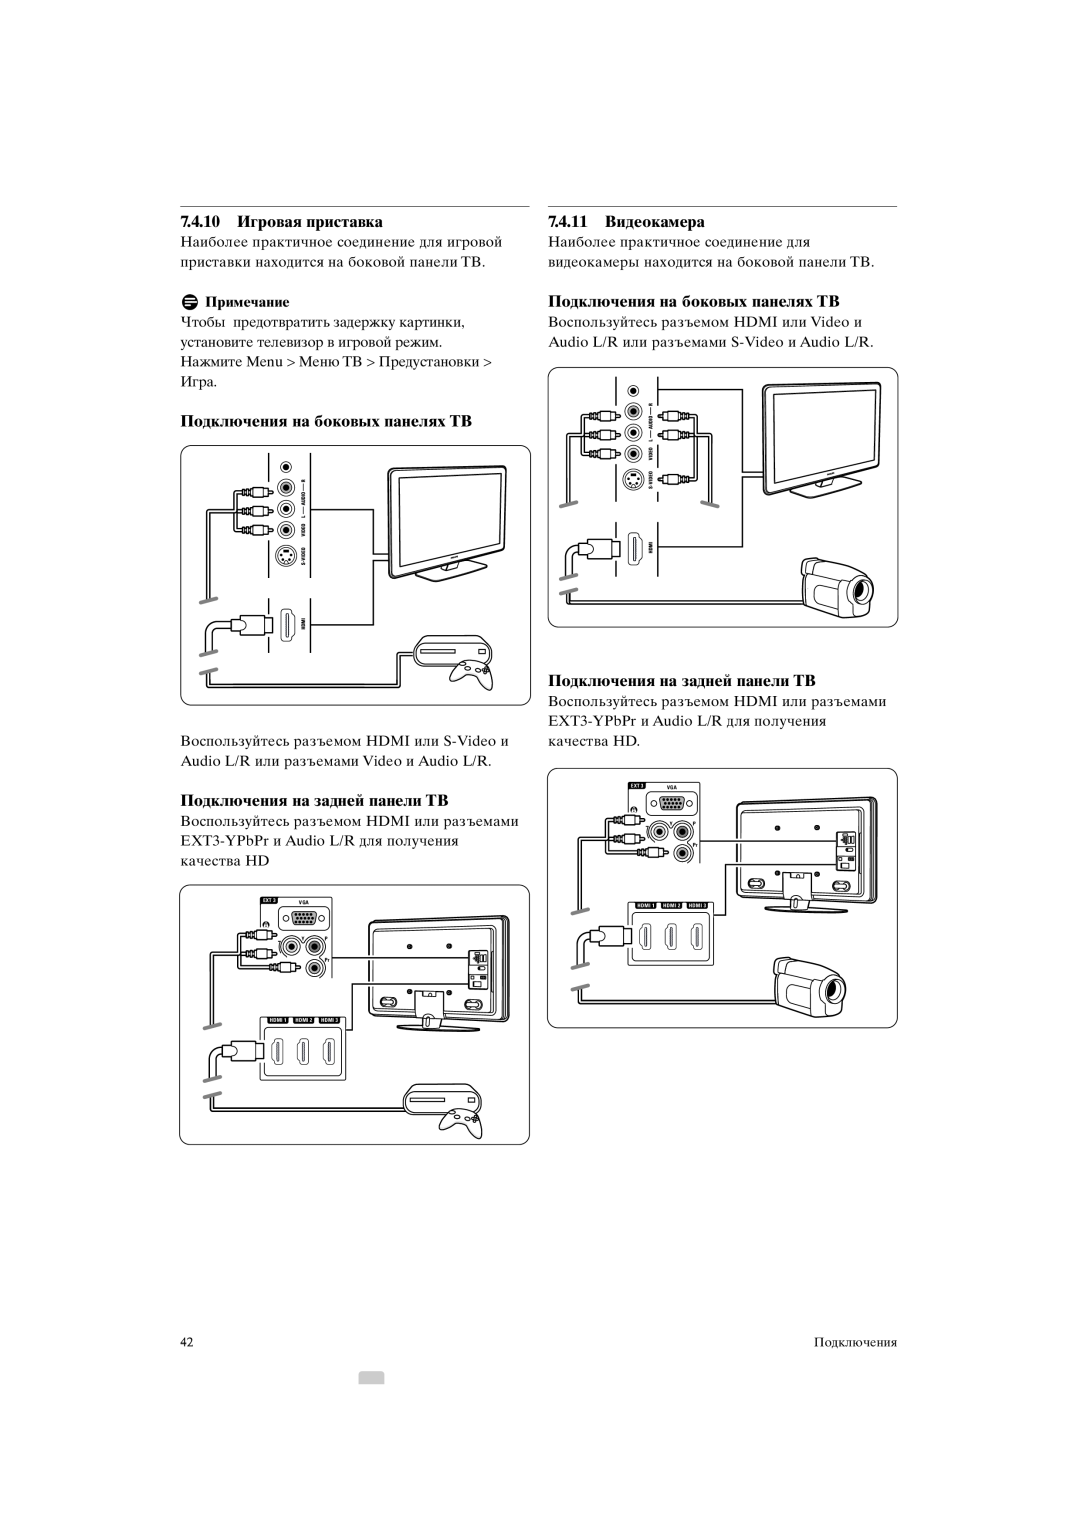 Philips 42PFL9903H/10 manual 7.4.10Игровая приставка, Подключения на боковых панелях ТВ, Подключения на задней панели ТВ 